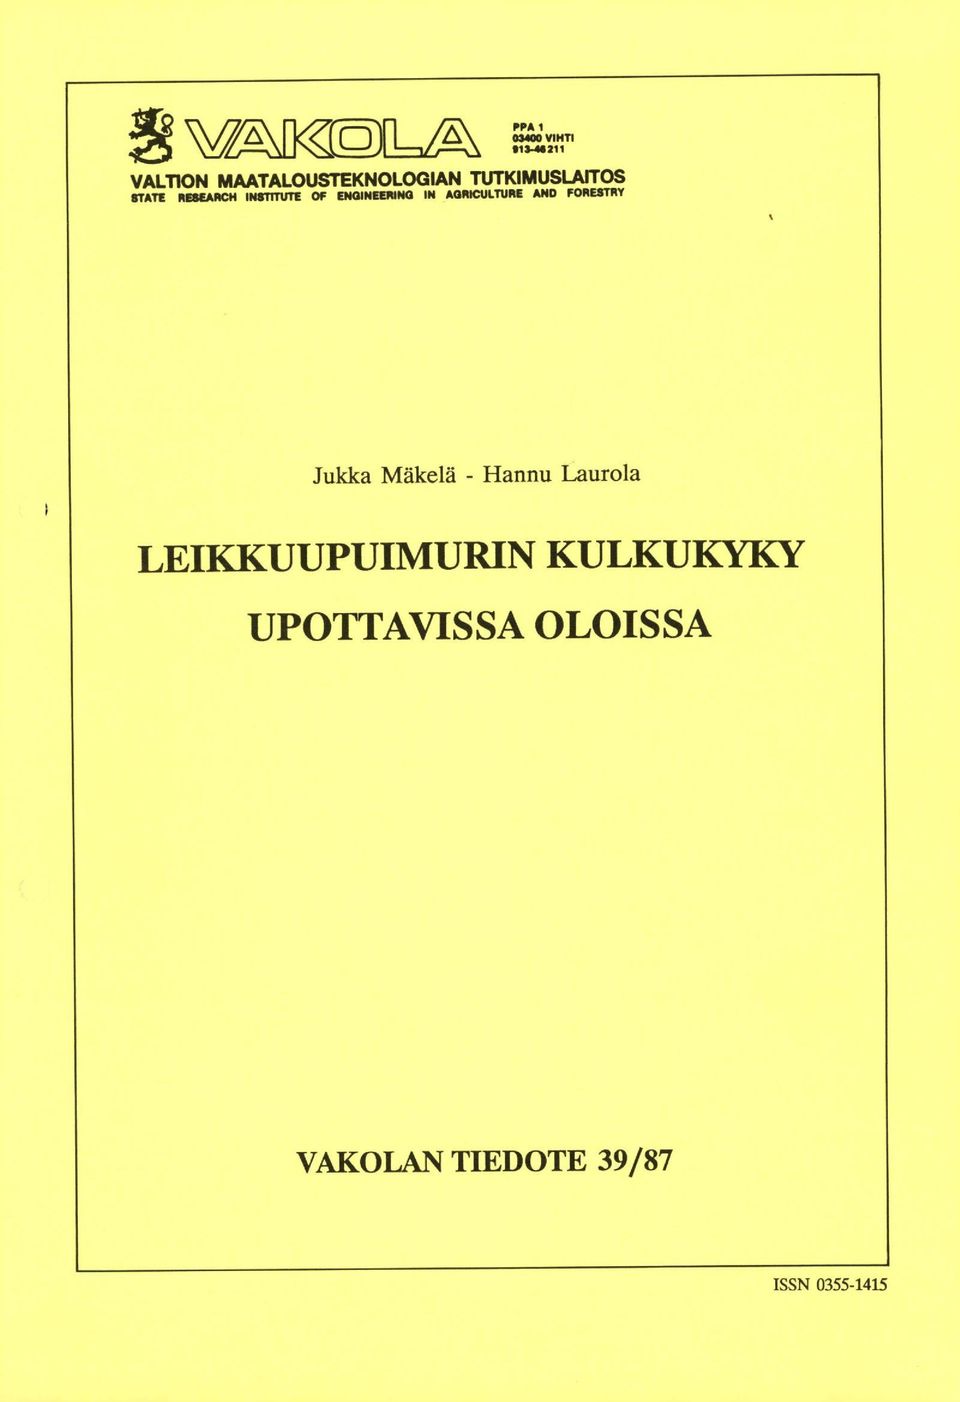 AGRICULTURE AND FORESTRY Jukka Mäkelä - Hannu Laurola